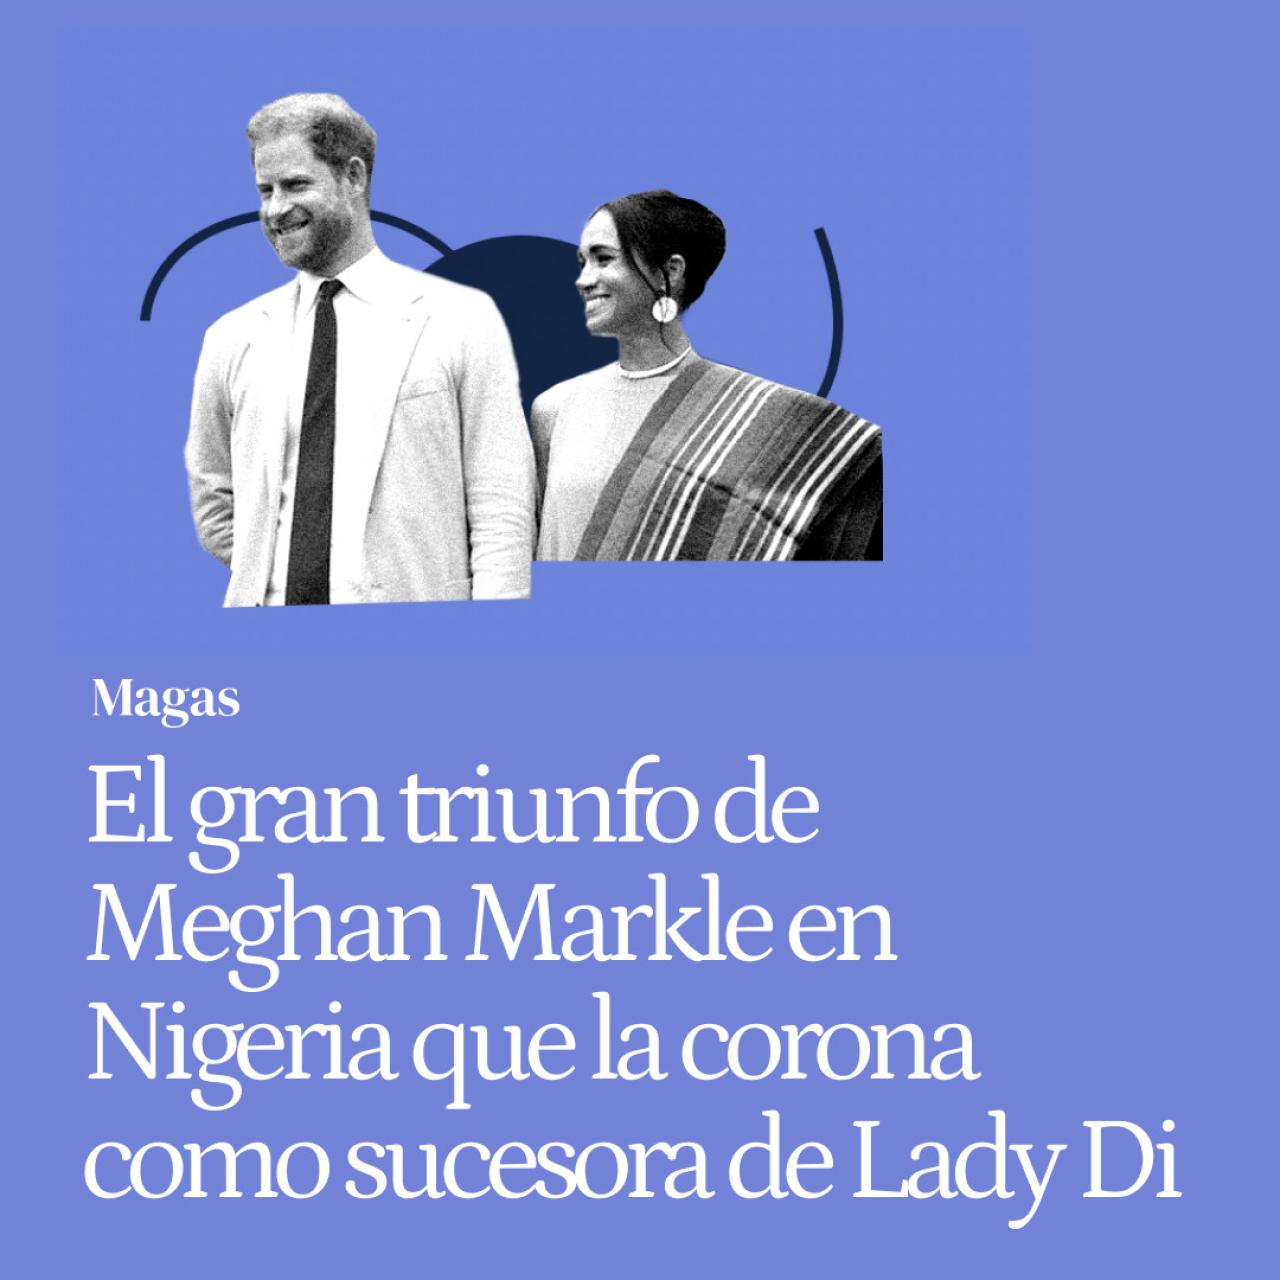 El gran triunfo de Meghan Markle en Nigeria que la corona como sucesora de Lady Di: los detalles ocultos de su viaje